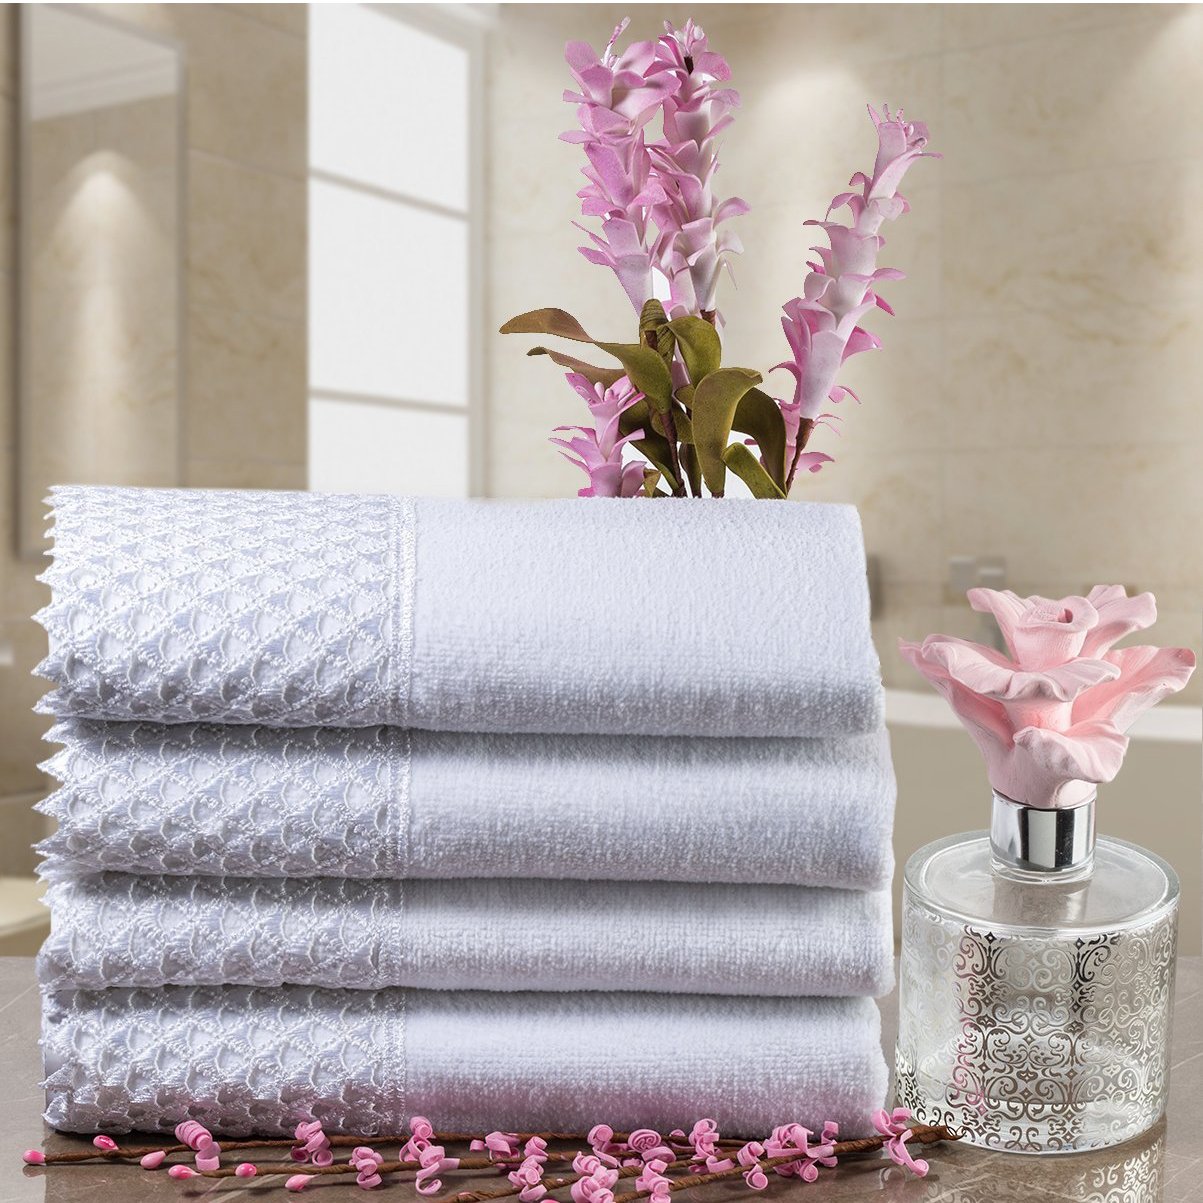 http://elegantlinen.com/cdn/shop/products/cotton-velour-fingertip-white-towel-with-white-lace-set-of-4-elegant-linen-1.jpg?v=1700170131